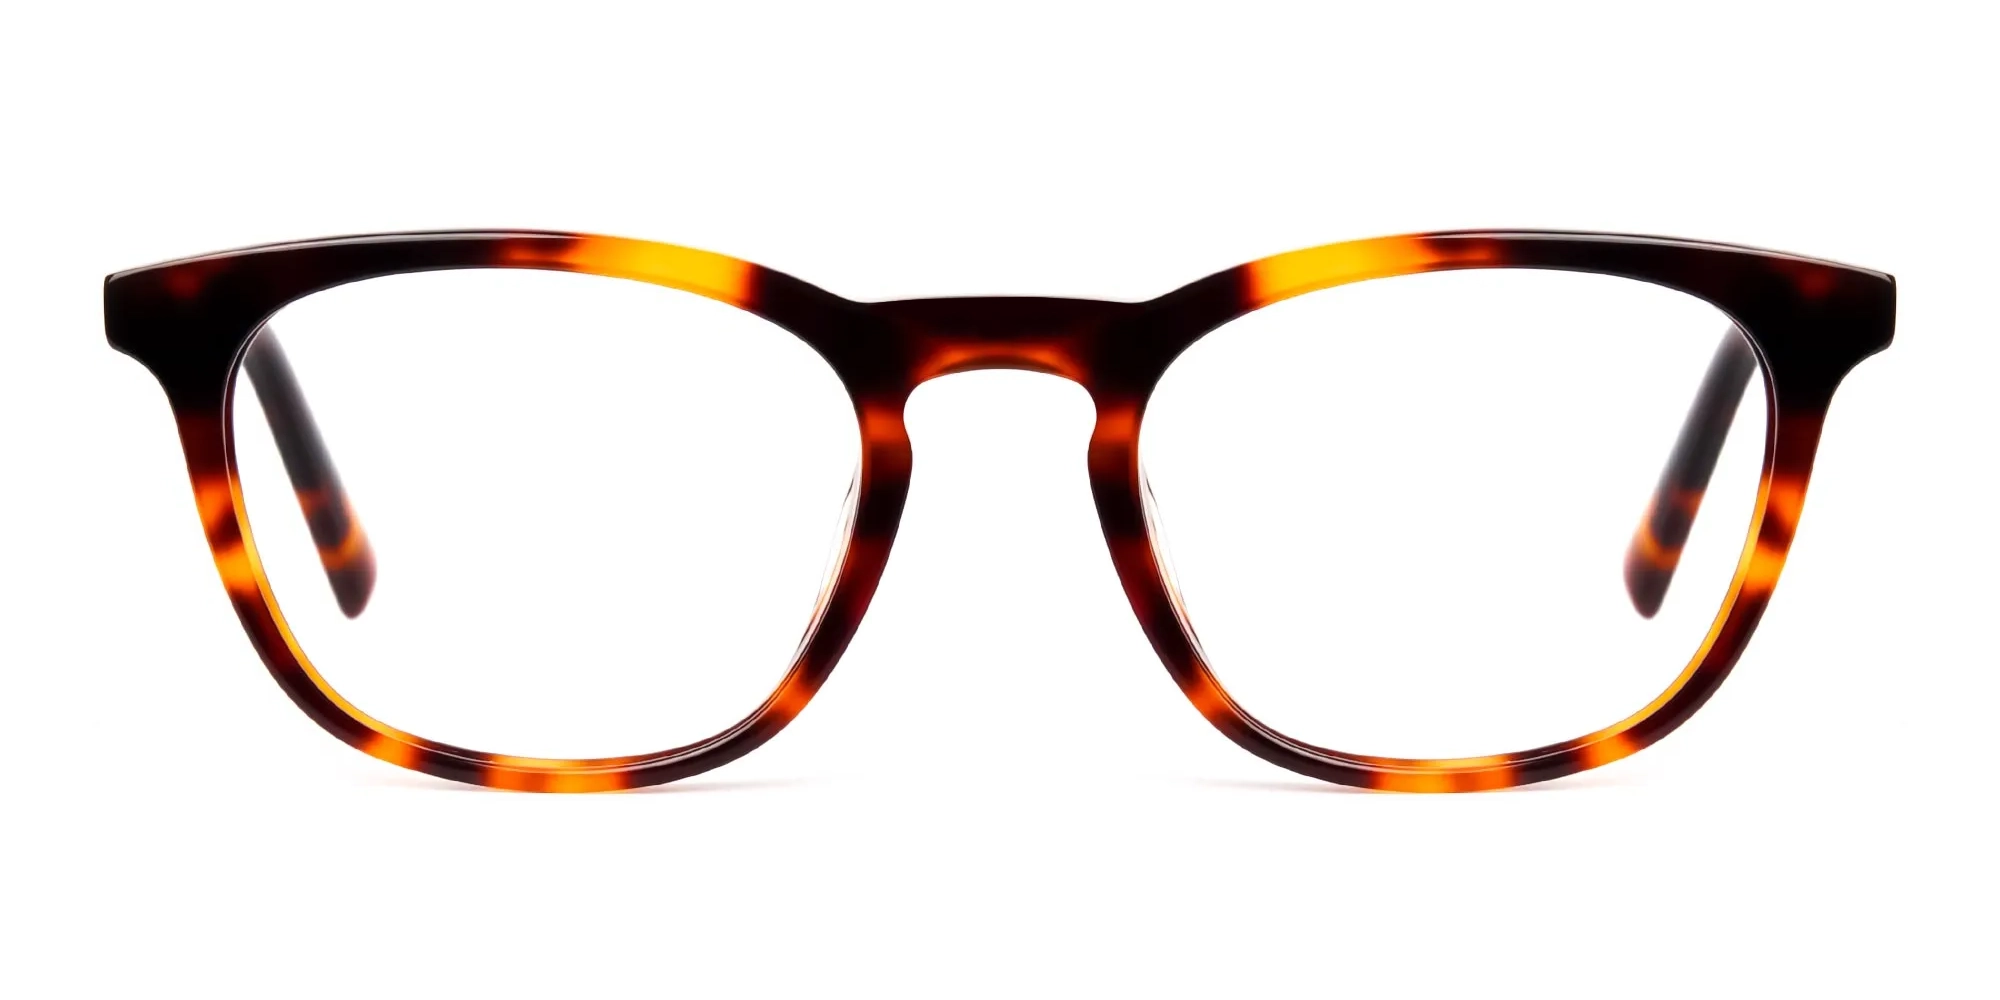 tortoise-shell-square-full-rim-glasses-frames-2